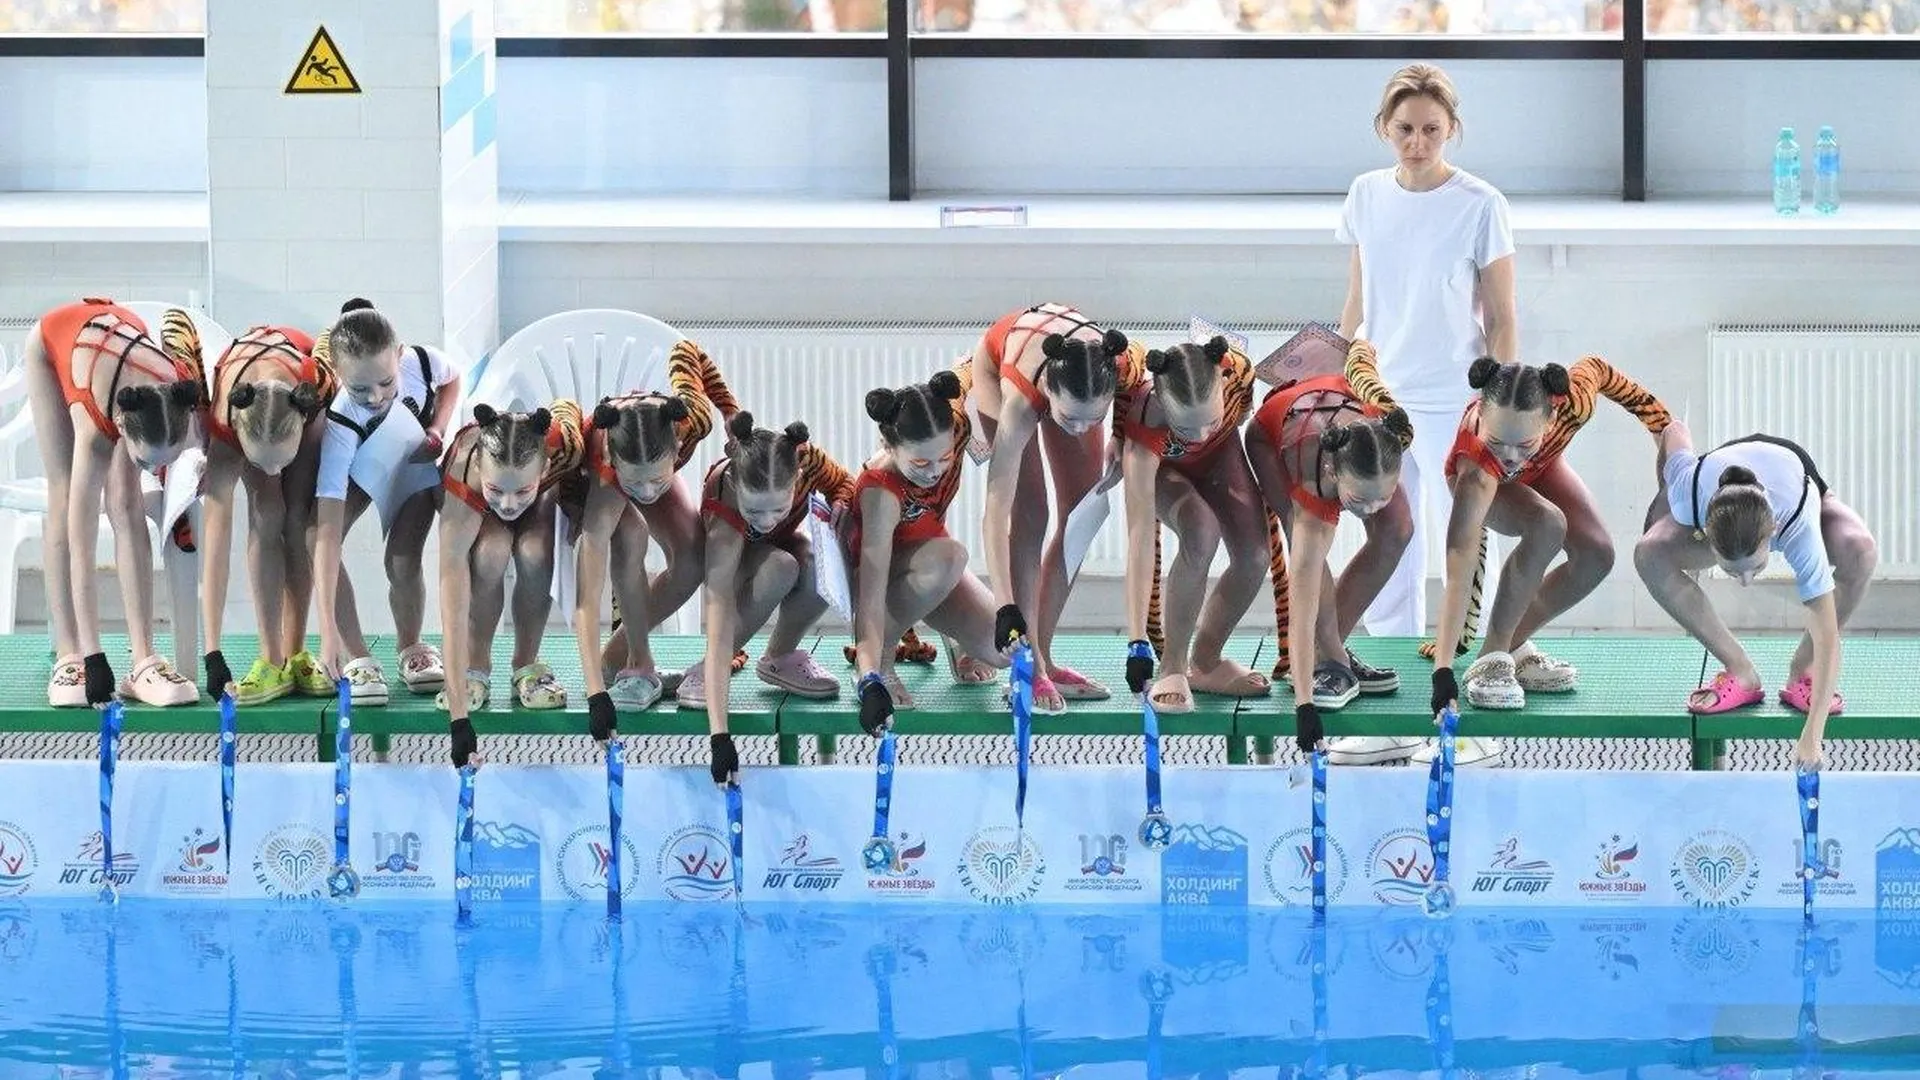 Спортсменки из Королева стали победительницами конкурса по синхронному плаванию